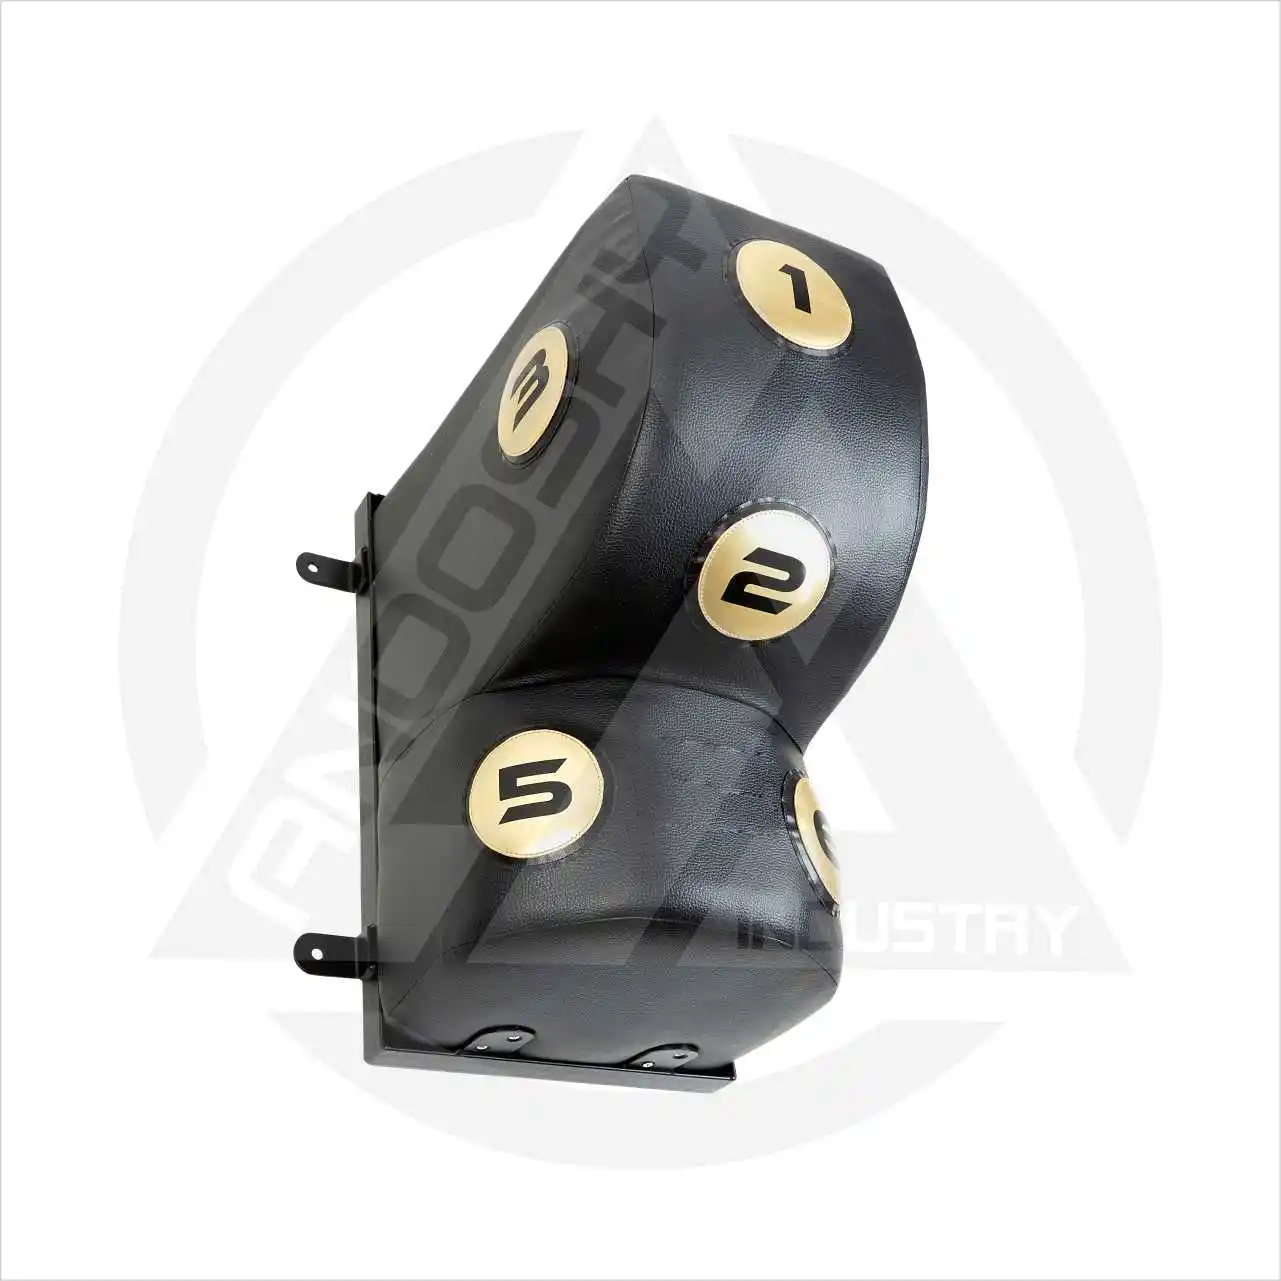 Uppercut Seat Wall Kick Boxsacks benutzerdefinierte Größe und Design PU-Leder Taucheschaumstoff je Kundenanforderung